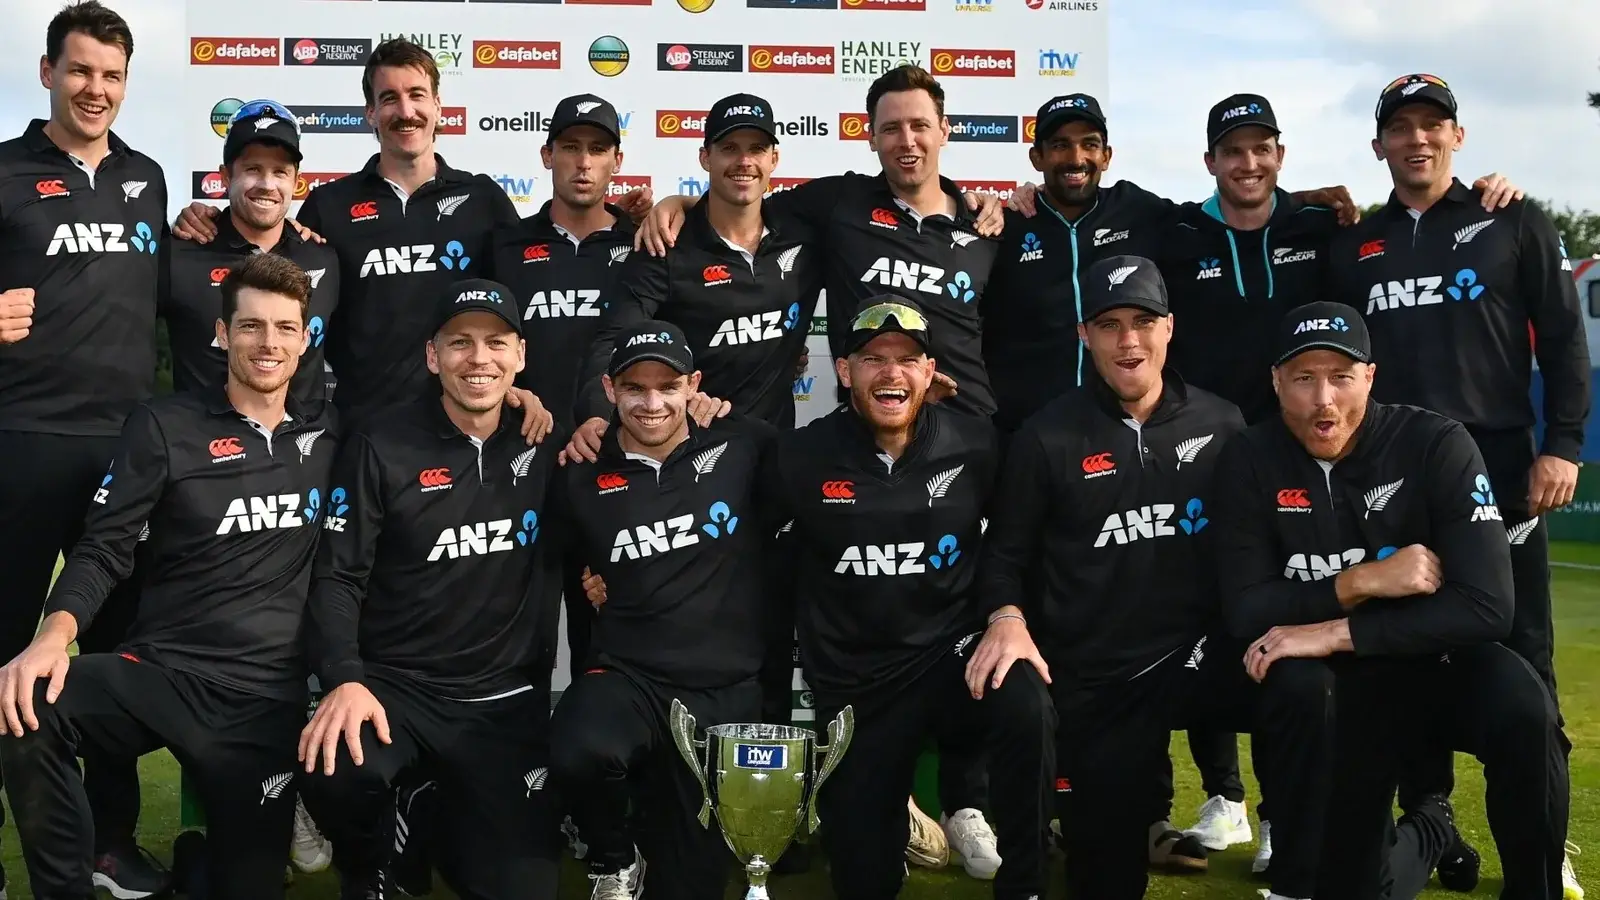  आईआरई बनाम एनजेड: न्यूजीलैंड ने आयरलैंड को 1 रन से हराया, वनडे सीरीज में 3-0 से जीत |  क्रिकेट
